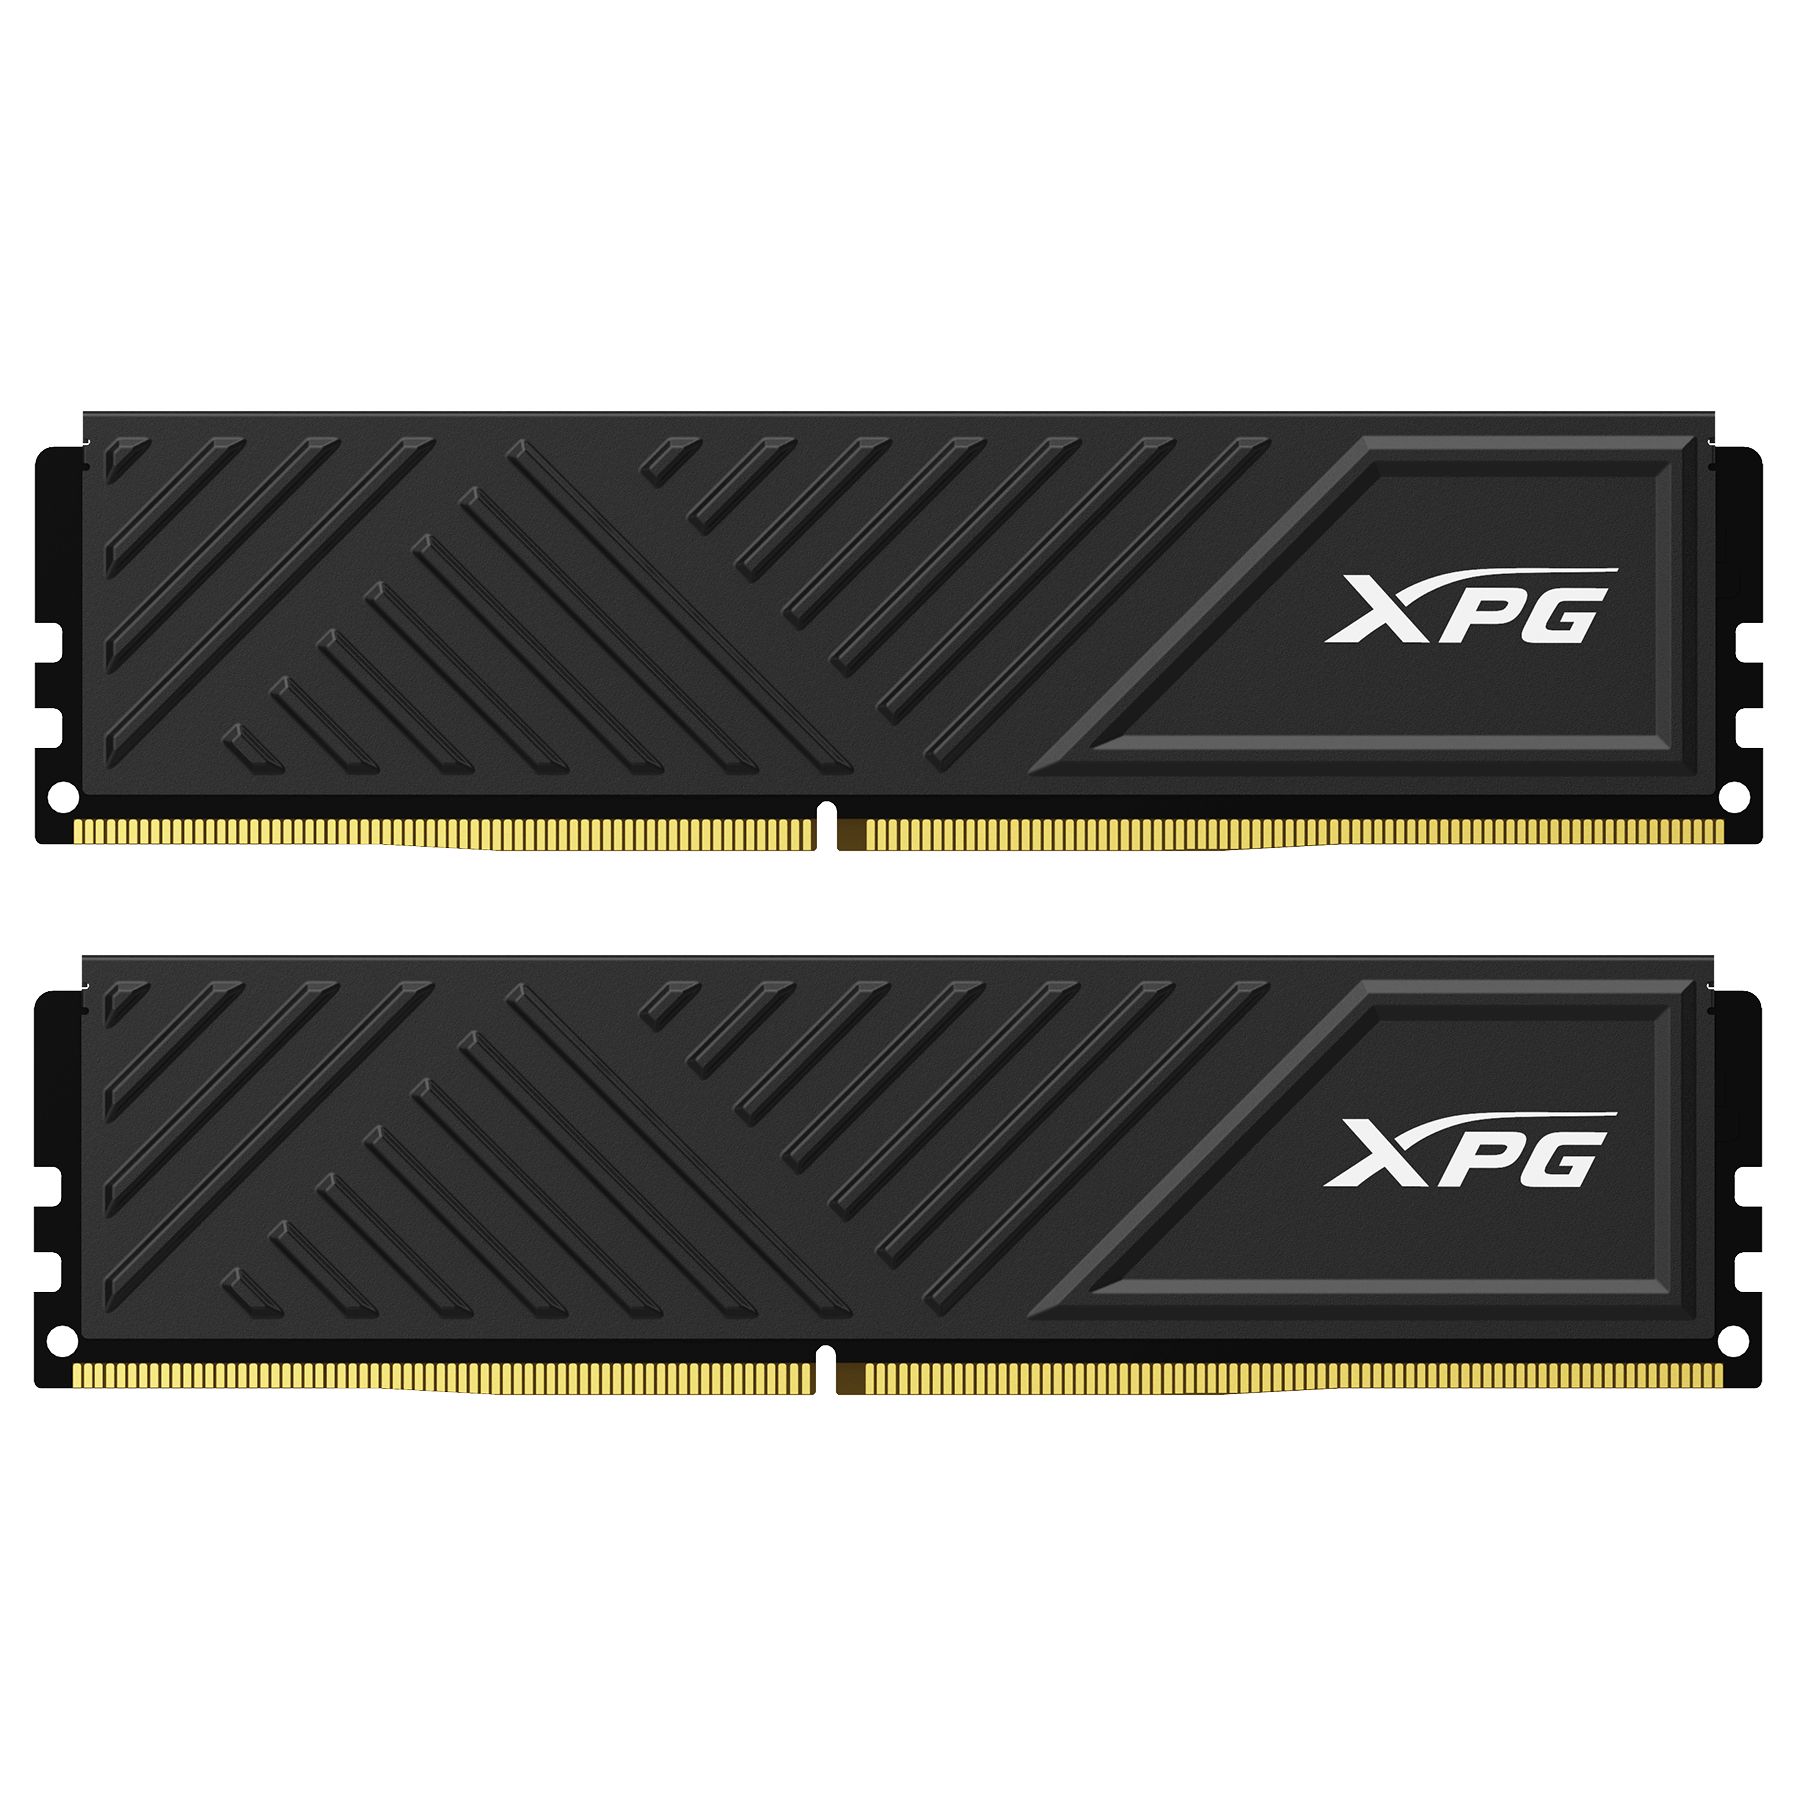 ADATA XPG GAMMIX DDR4 16GB (2X8GB) CL16 3200MHZ_1